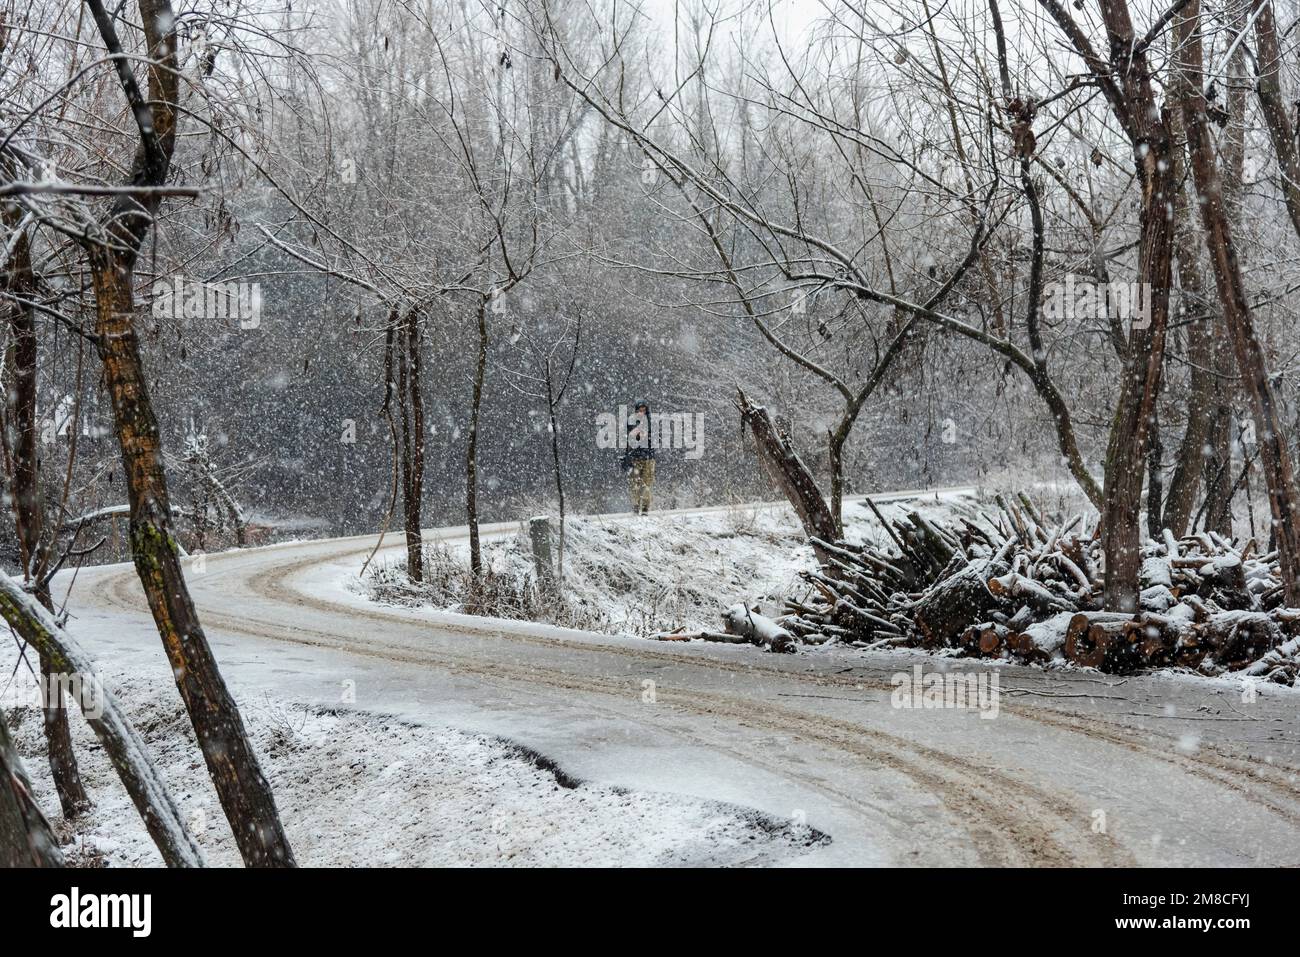 Vista generale della strada innevata durante le nevicate. Il Kashmir ha ricevuto nevicate fresche, con le cali più alte della valle che hanno ricevuto nevicate da moderate a pesanti e nevicate da leggere a moderate in pianura, causando una visibilità distruttiva. Questo ha influito sulle operazioni di volo insieme alla chiusura dell'autostrada nazionale Srinagar-Jammu. Foto Stock